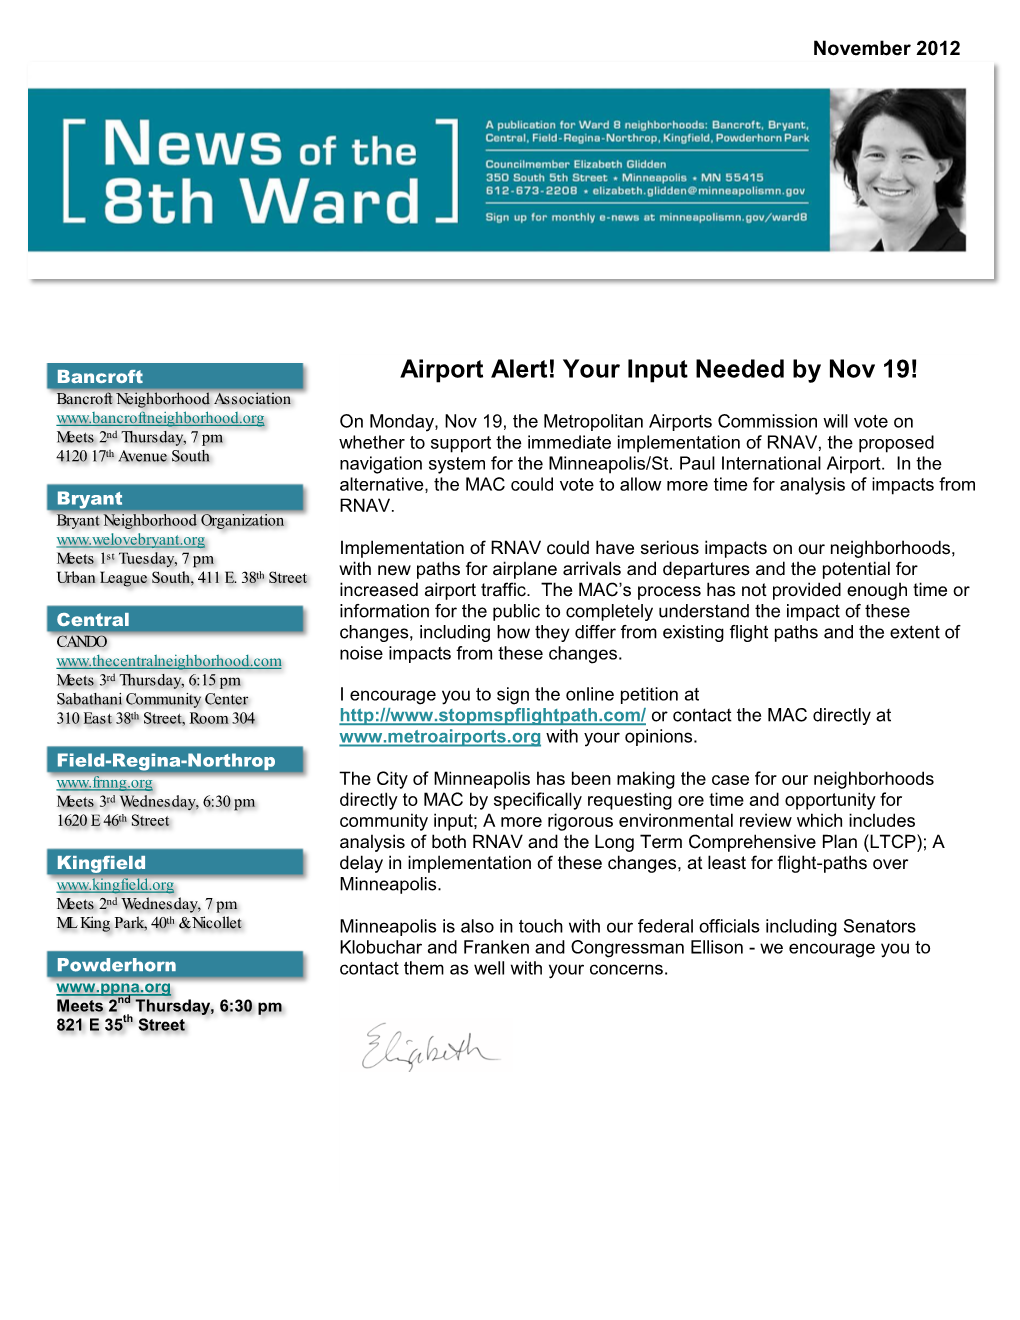 Ward 8 Newsletter November 2012